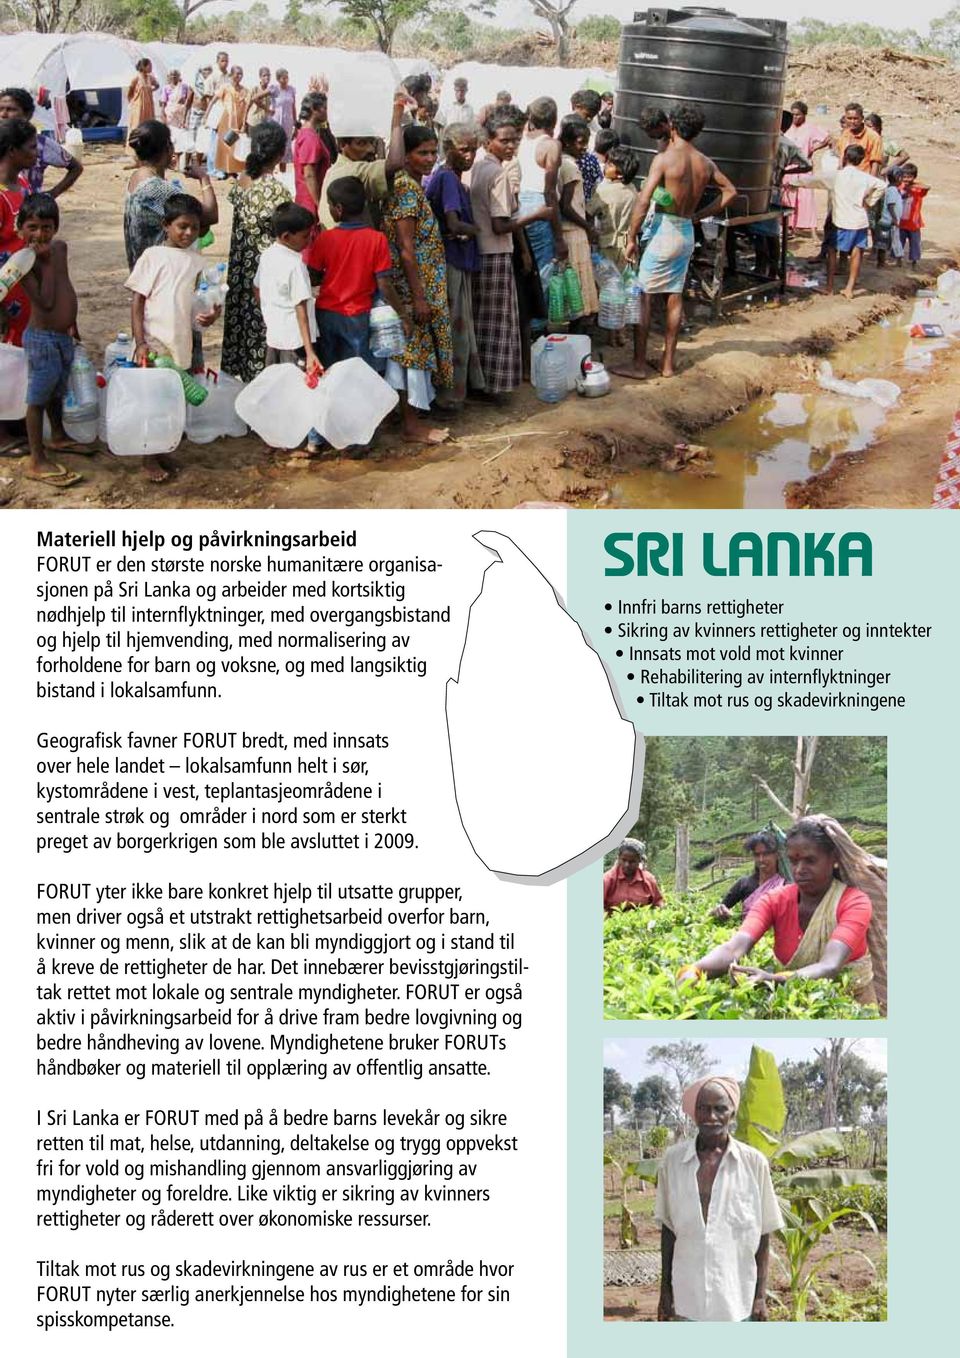 Sri lanka Innfri barns rettigheter Sikring av kvinners rettigheter og inntekter Innsats mot vold mot kvinner Rehabilitering av internflyktninger Tiltak mot rus og skadevirkningene Geografisk favner